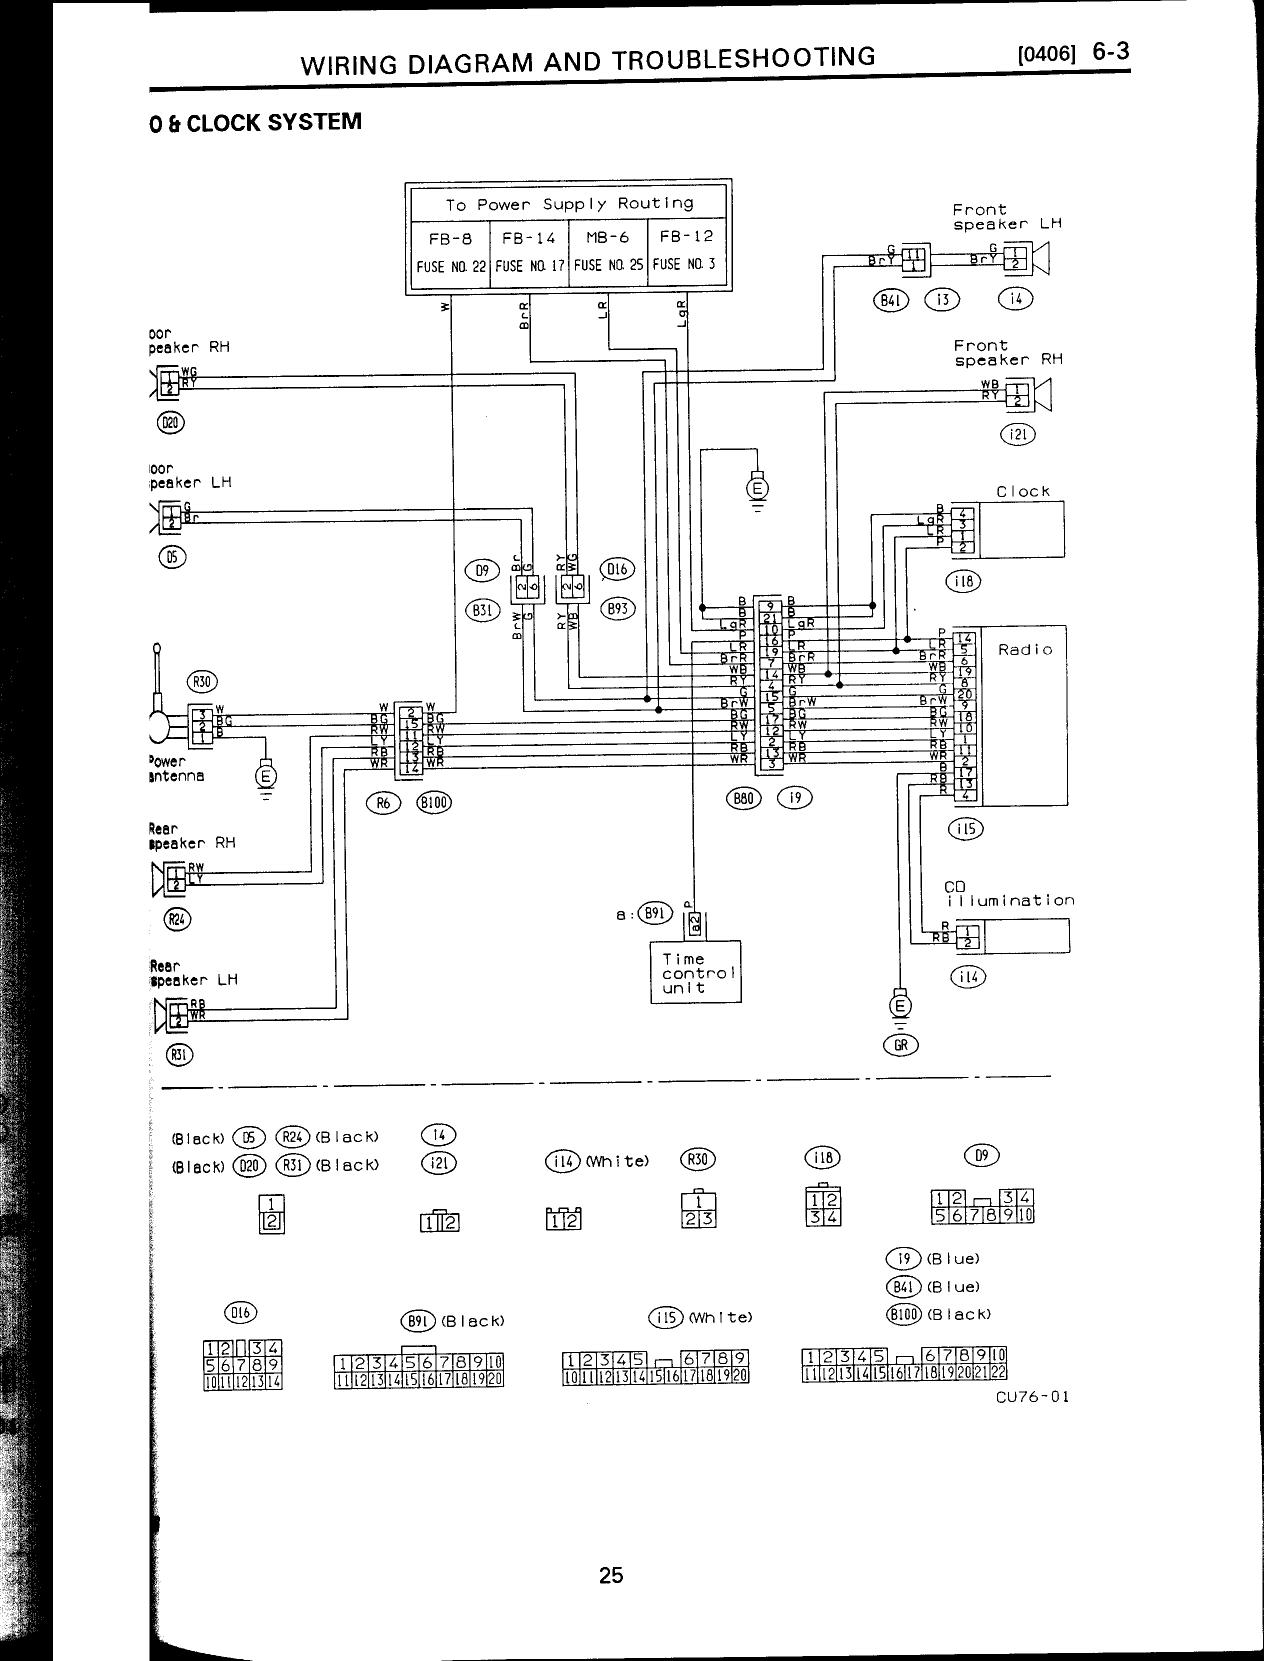 SUBARU - Car PDF Manual, Wiring Diagram & Fault Codes DTC  2018 Wrx Stereo Wiring Diagram    Car PDF Manual, Wiring Diagram & Fault Codes DTC